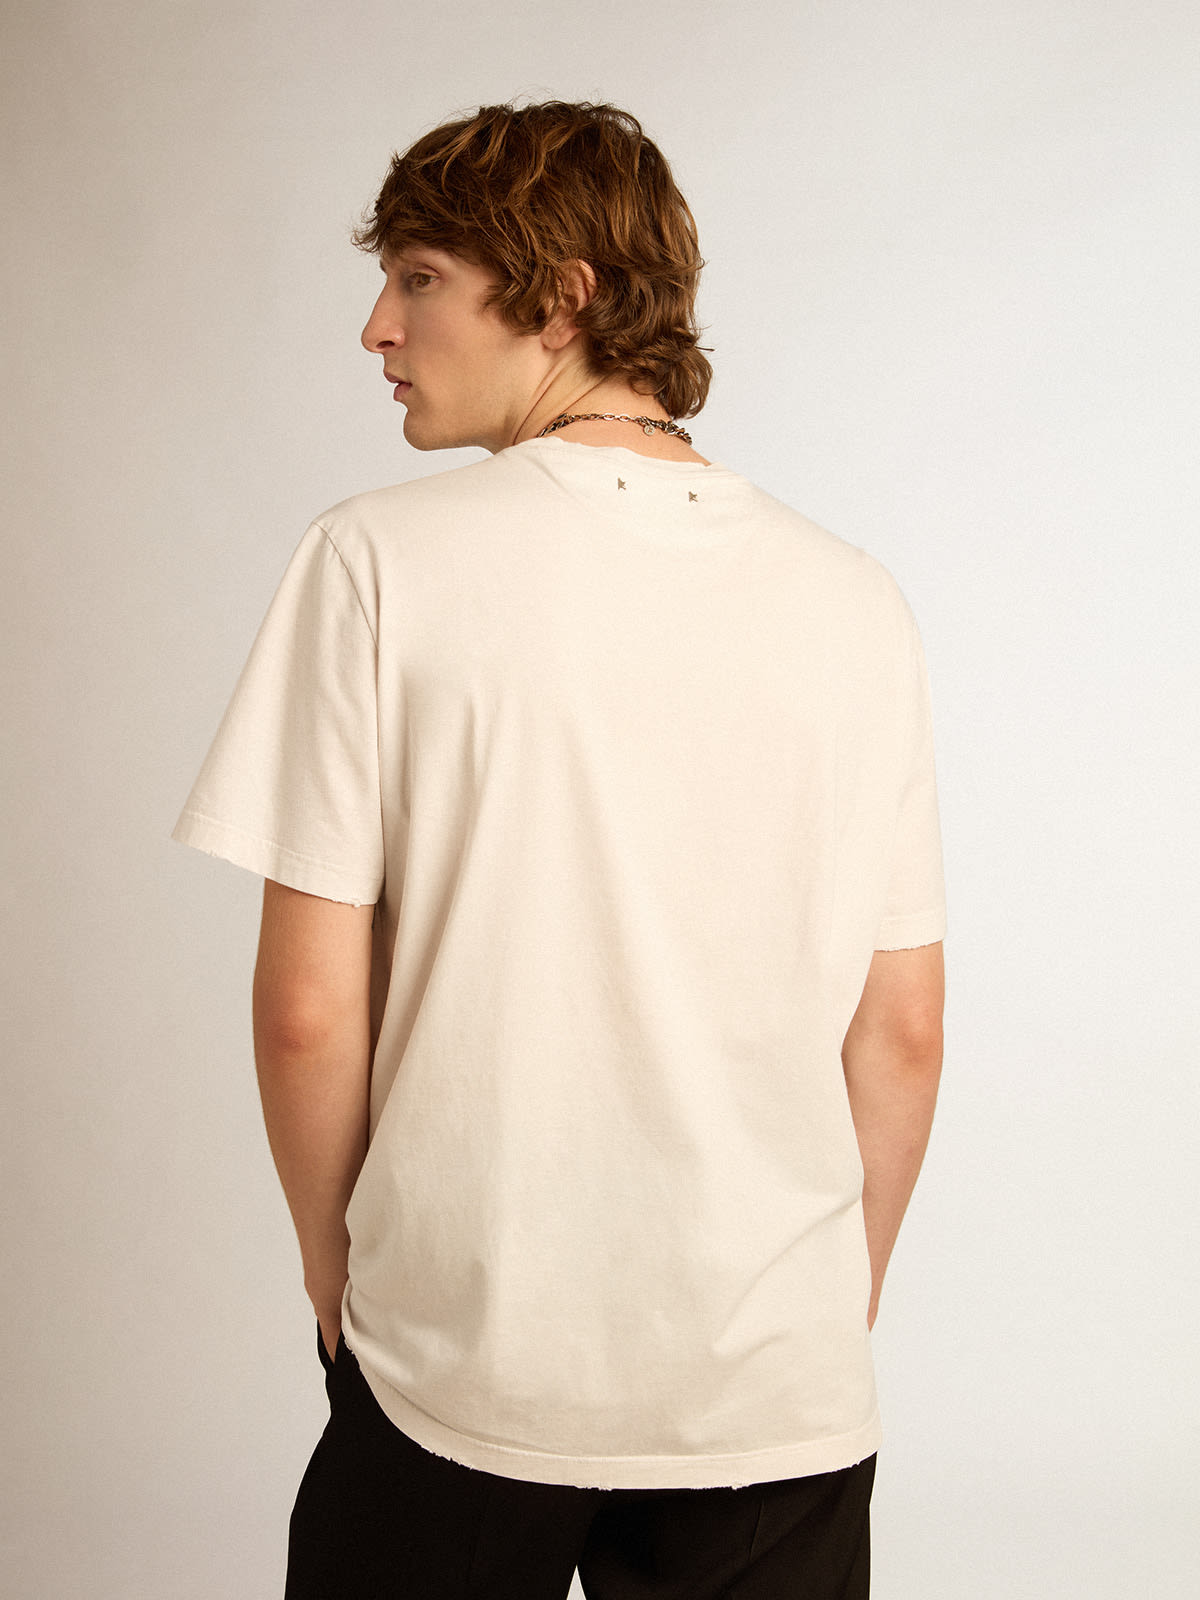 Golden Goose - Weißes T-Shirt aus der Golden Collection mit Distressed-Finish in 